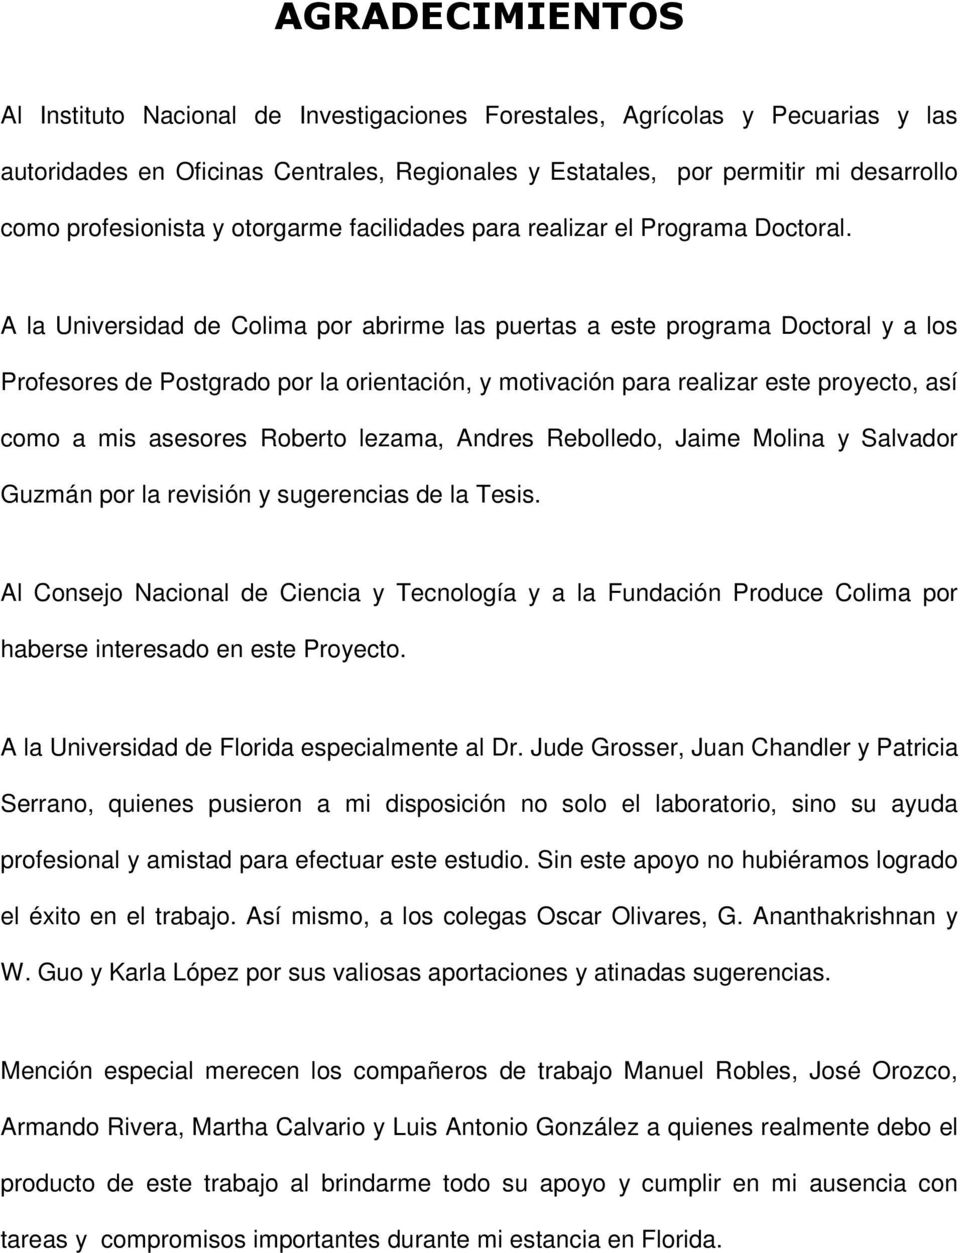 A la Universidad de Colima por abrirme las puertas a este programa Doctoral y a los Profesores de Postgrado por la orientación, y motivación para realizar este proyecto, así como a mis asesores